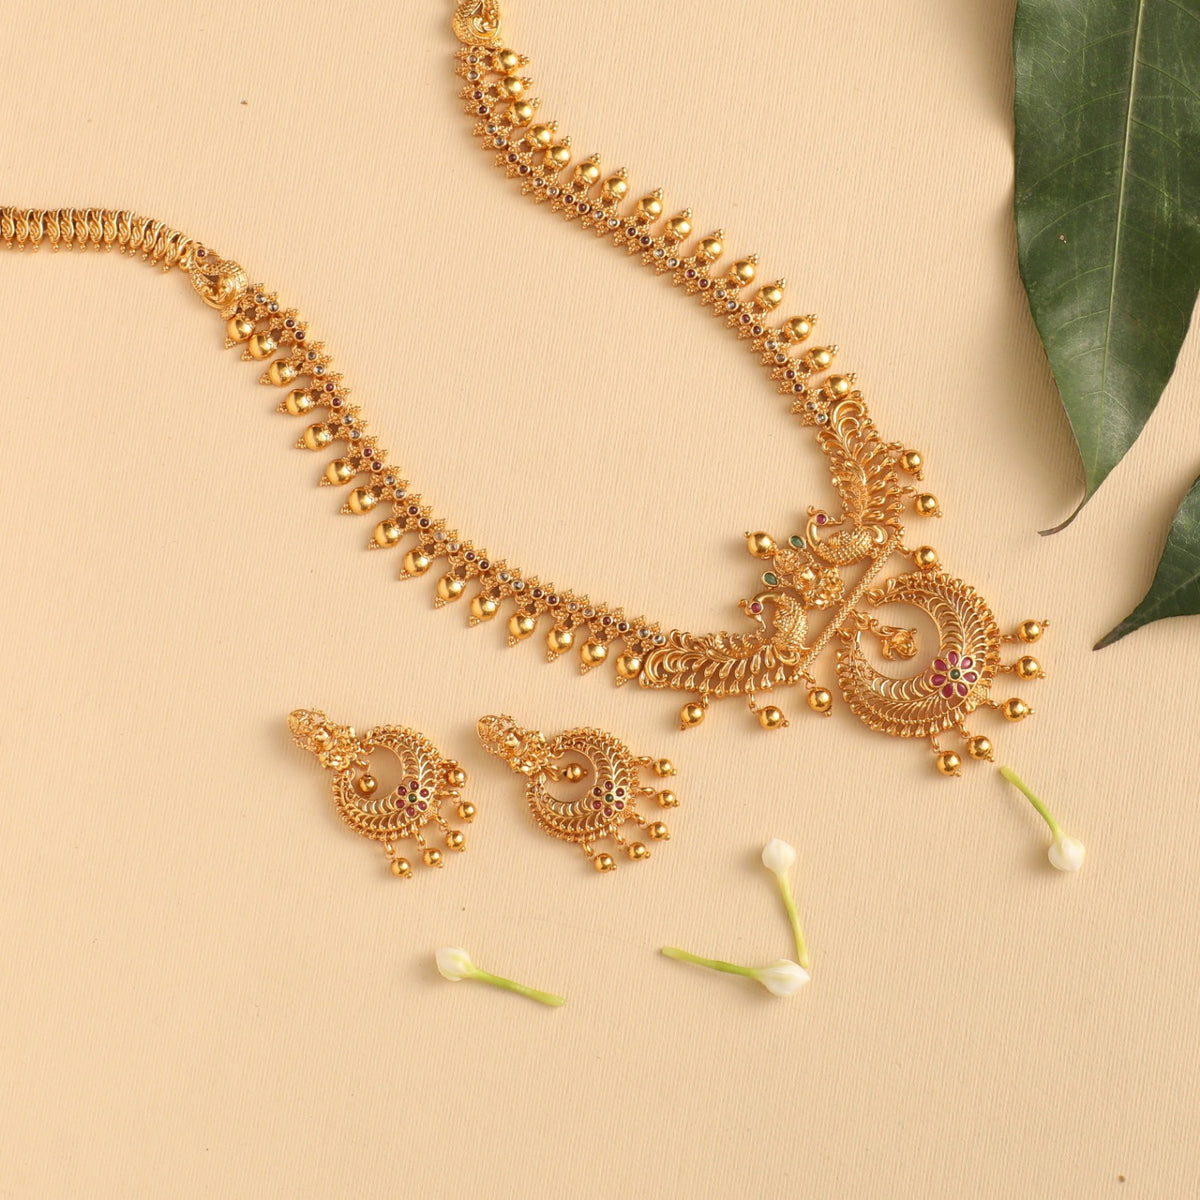 Hami Antique Long Necklace Set